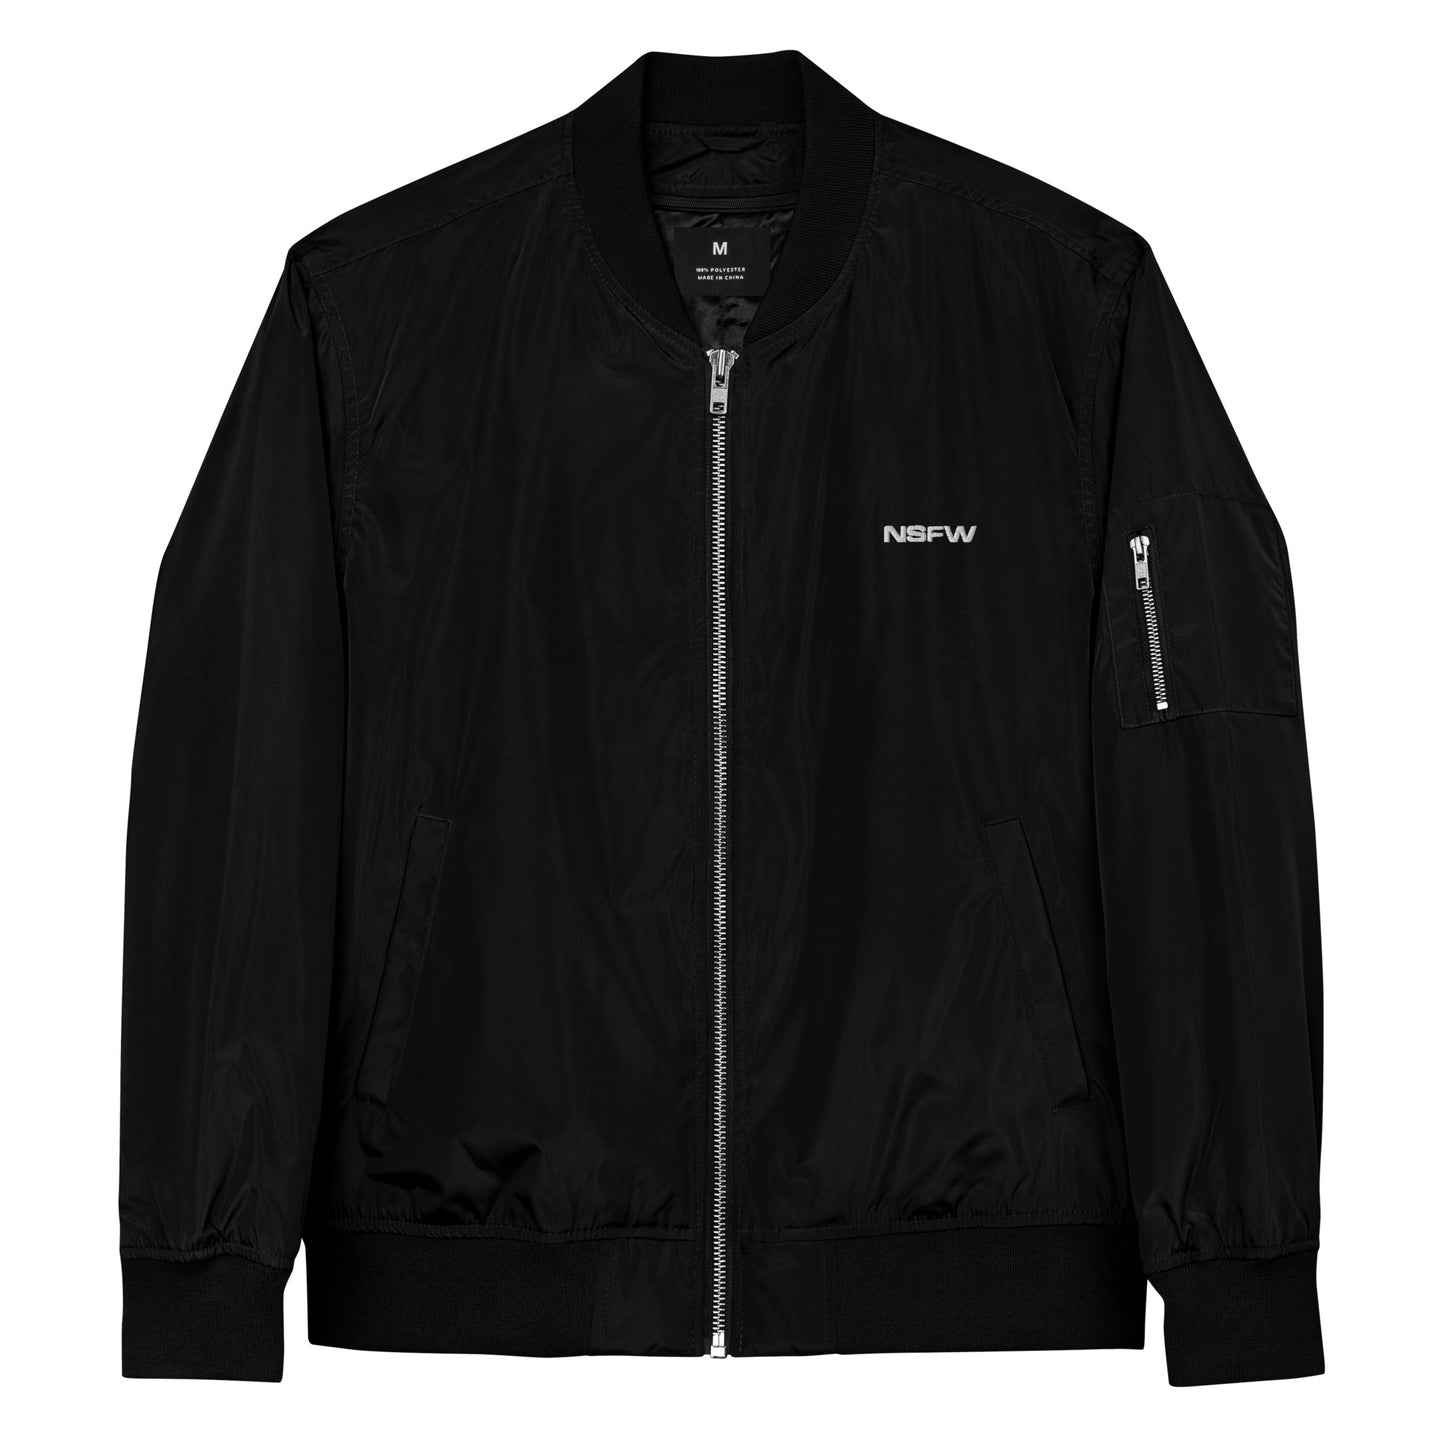 NSFW bomber jacket